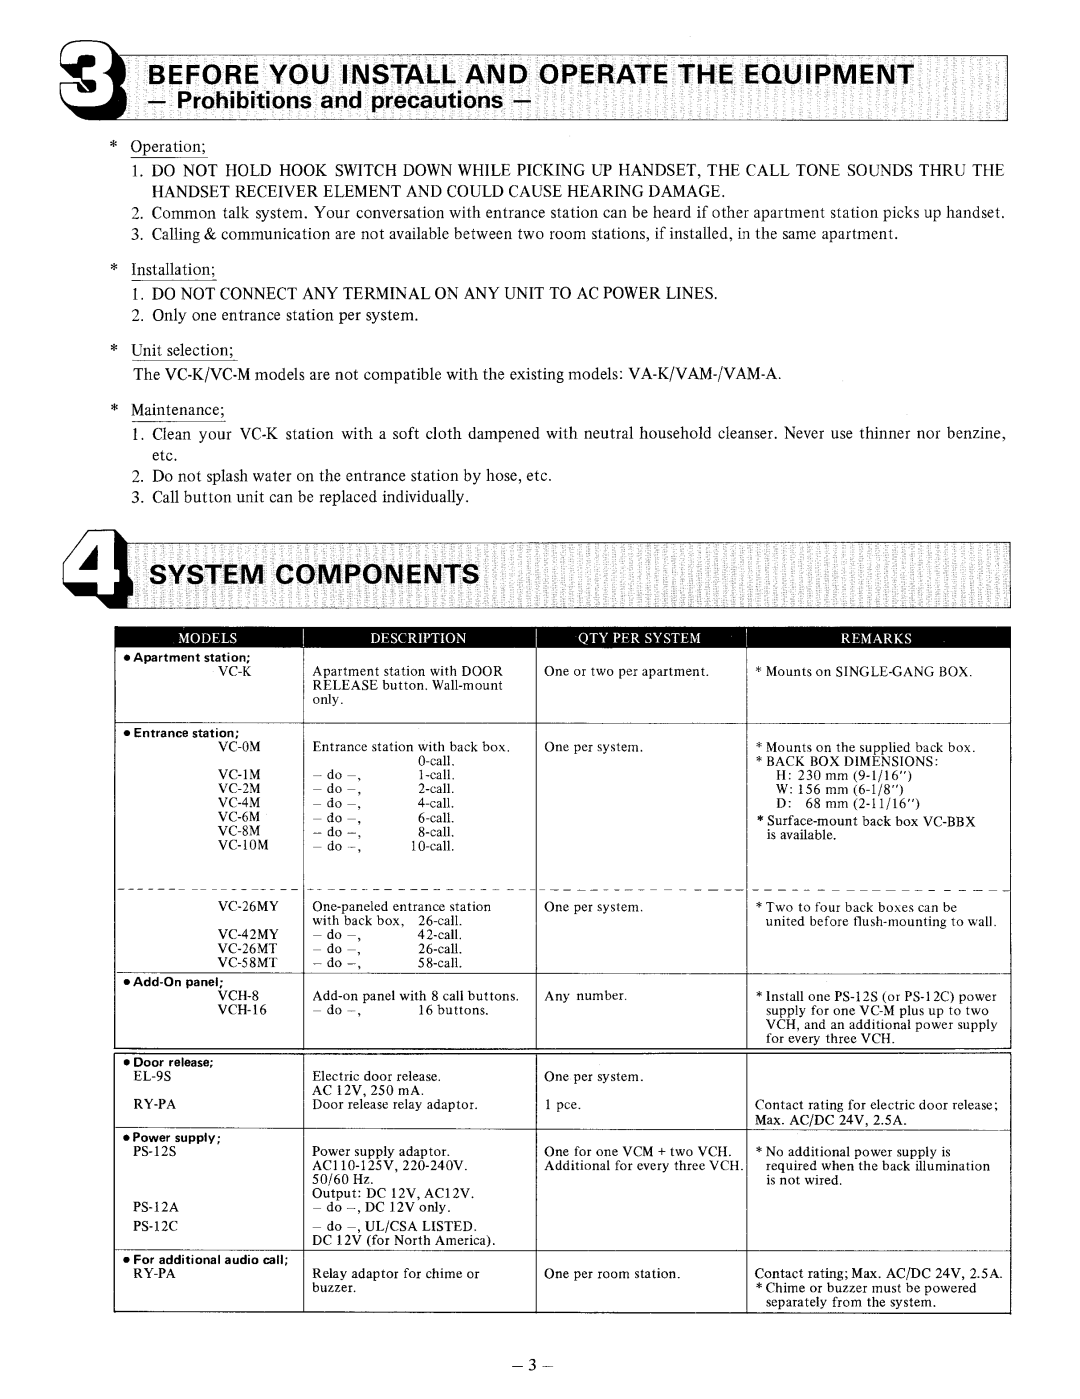 Aiphone VC-58MT, VC-K, VCH-8, VCH-16, VC-26MT manual 